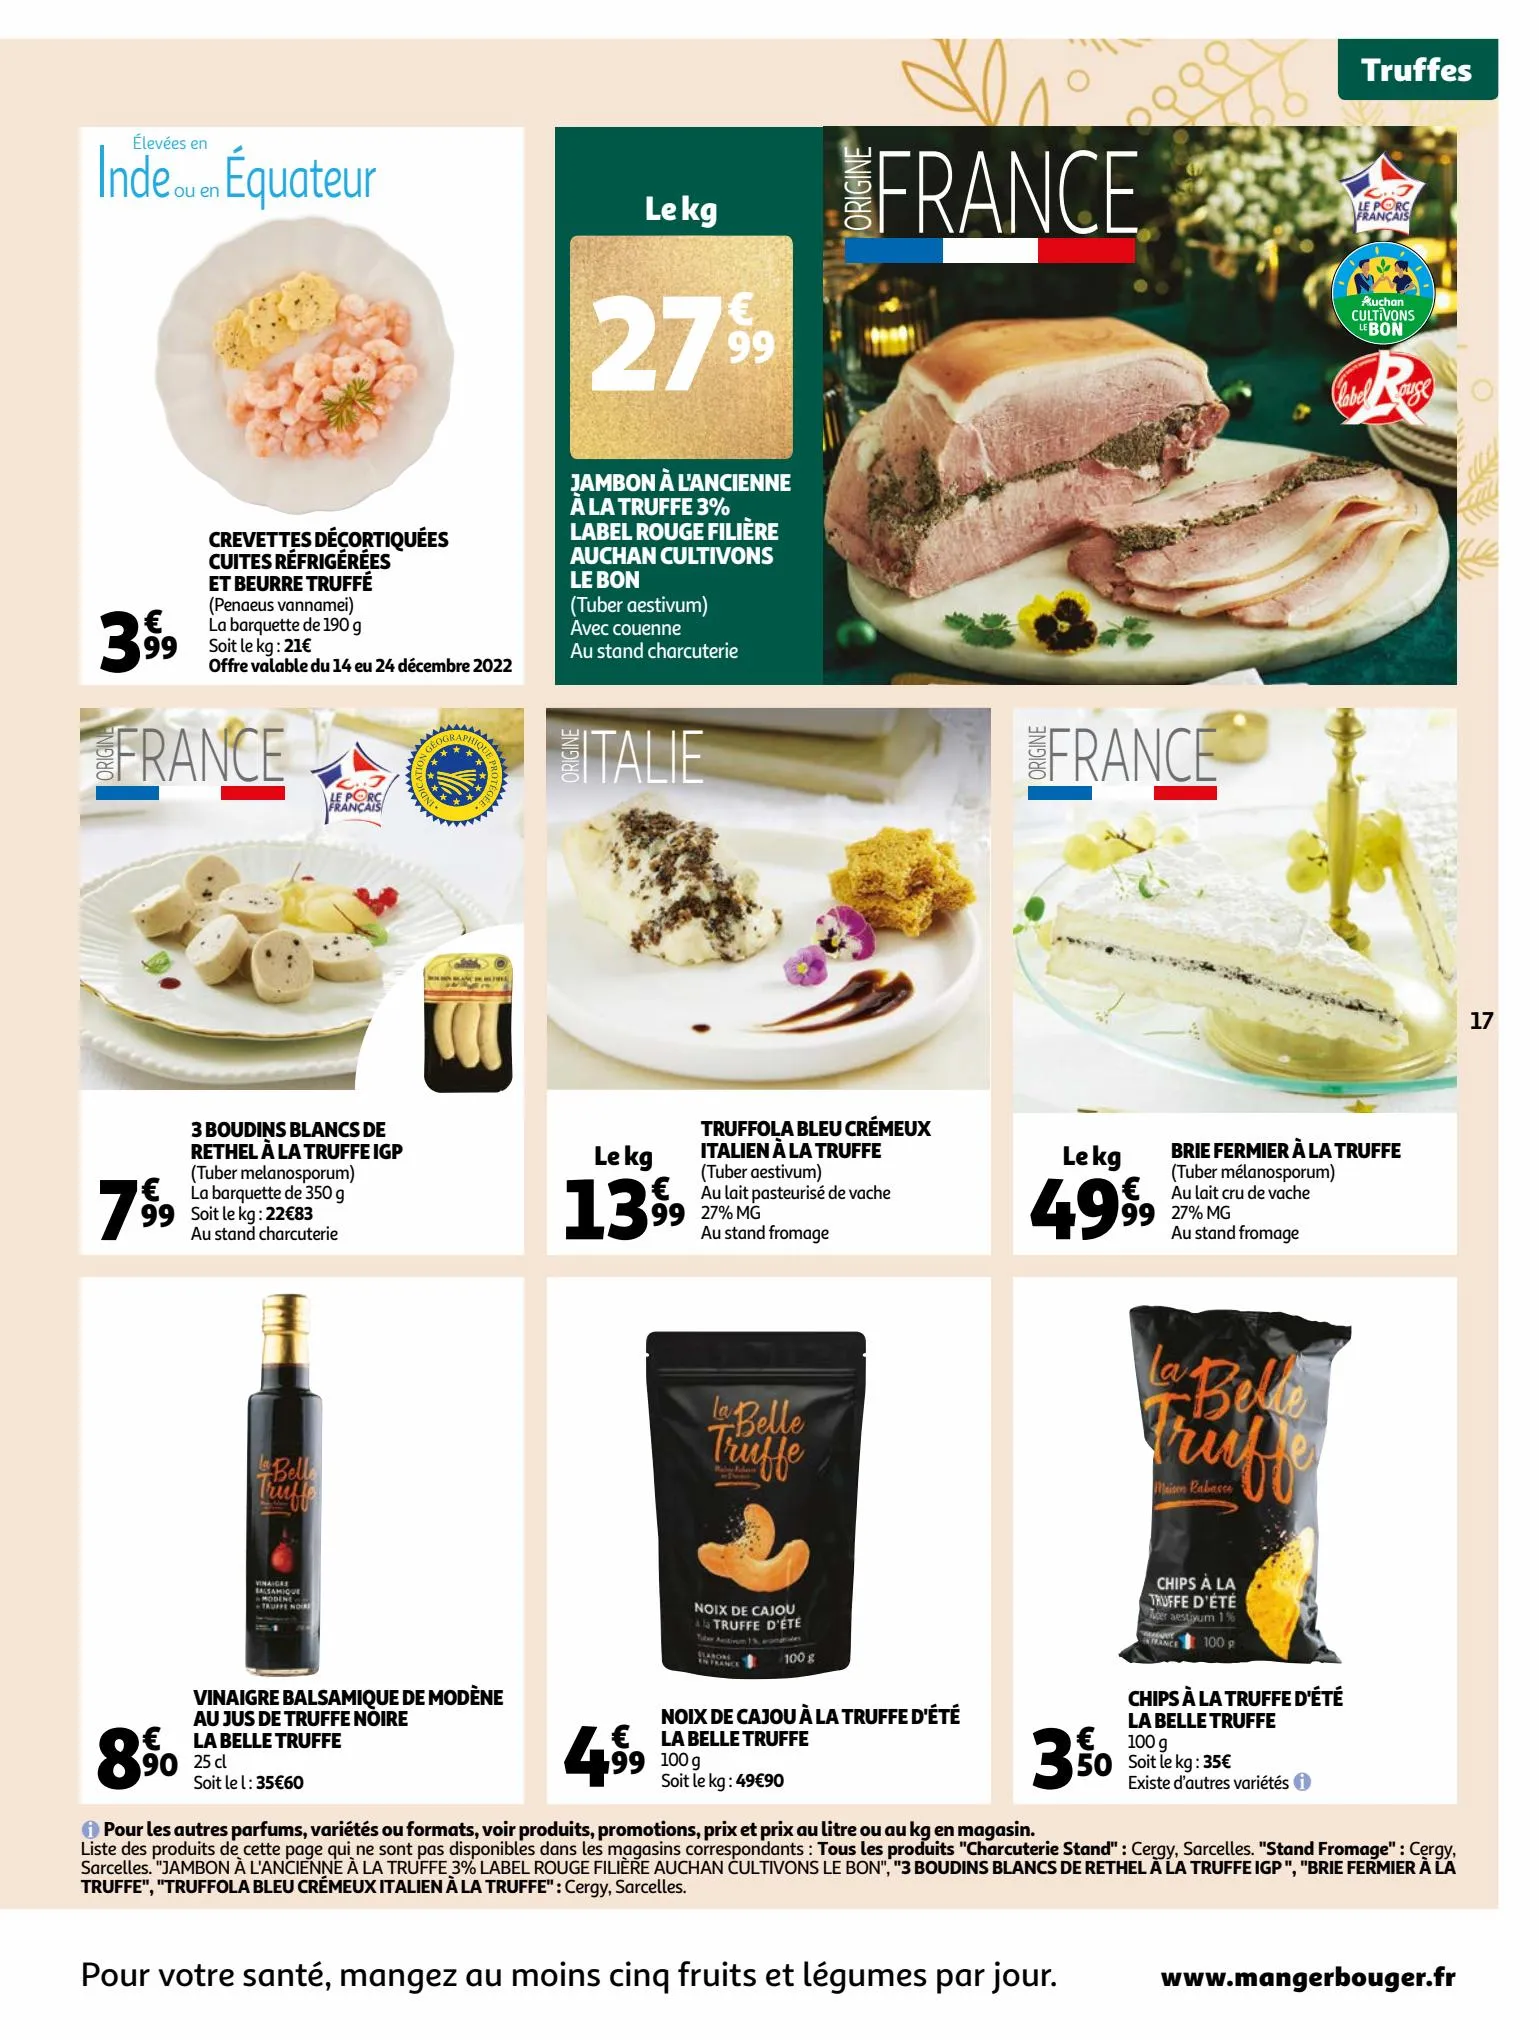 Catalogue Guide gastronomique, page 00017